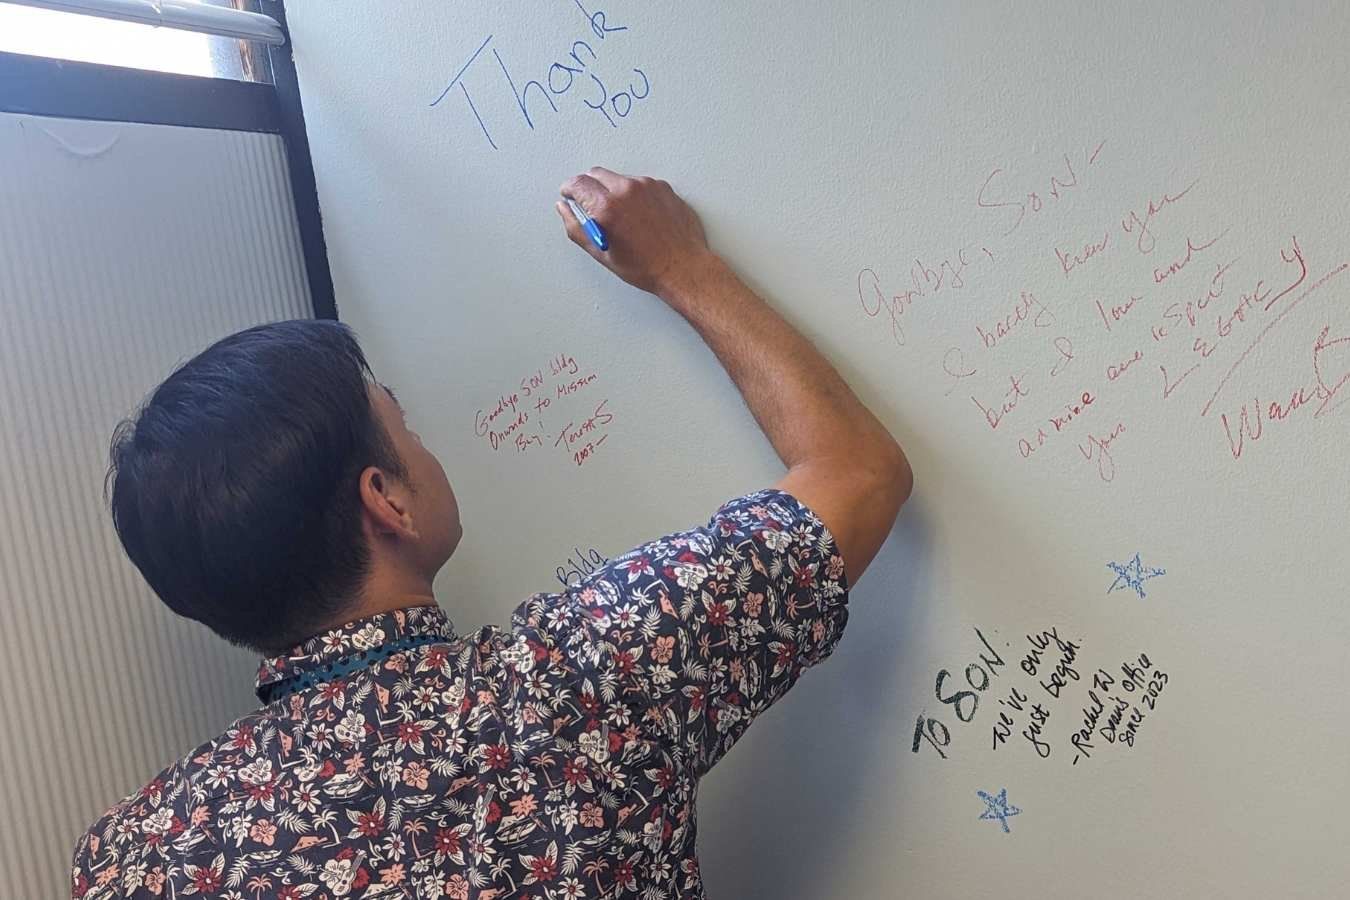 Man writes thanks on wall